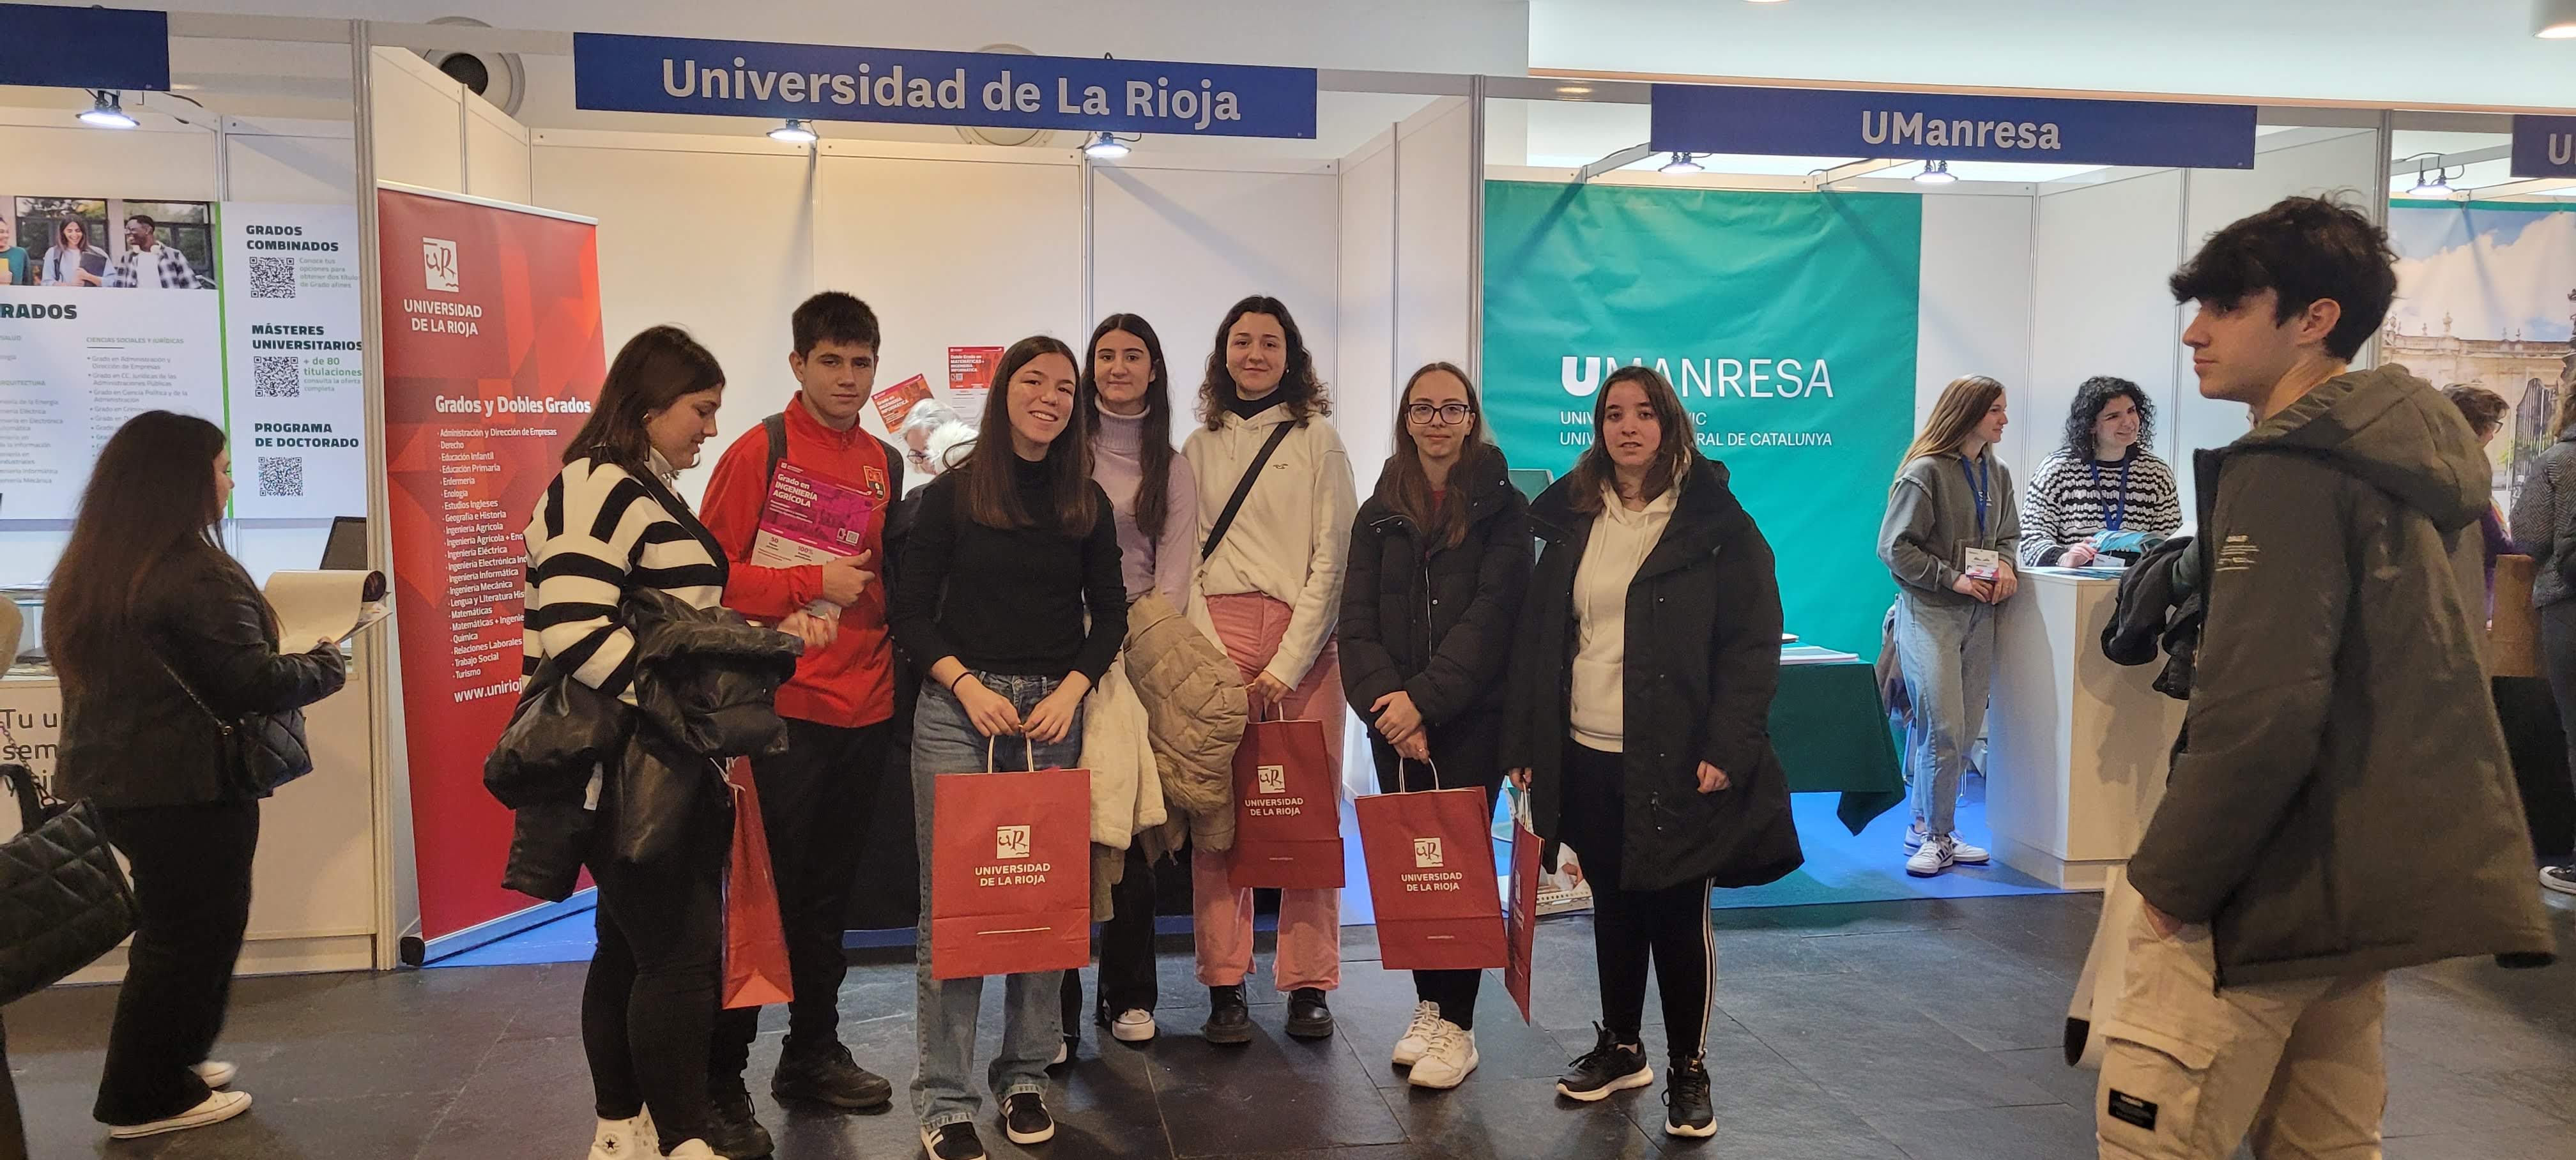 Alumnado de 4º visitaron el Salón del Estudiante en Pamplona el 8 de marzo.